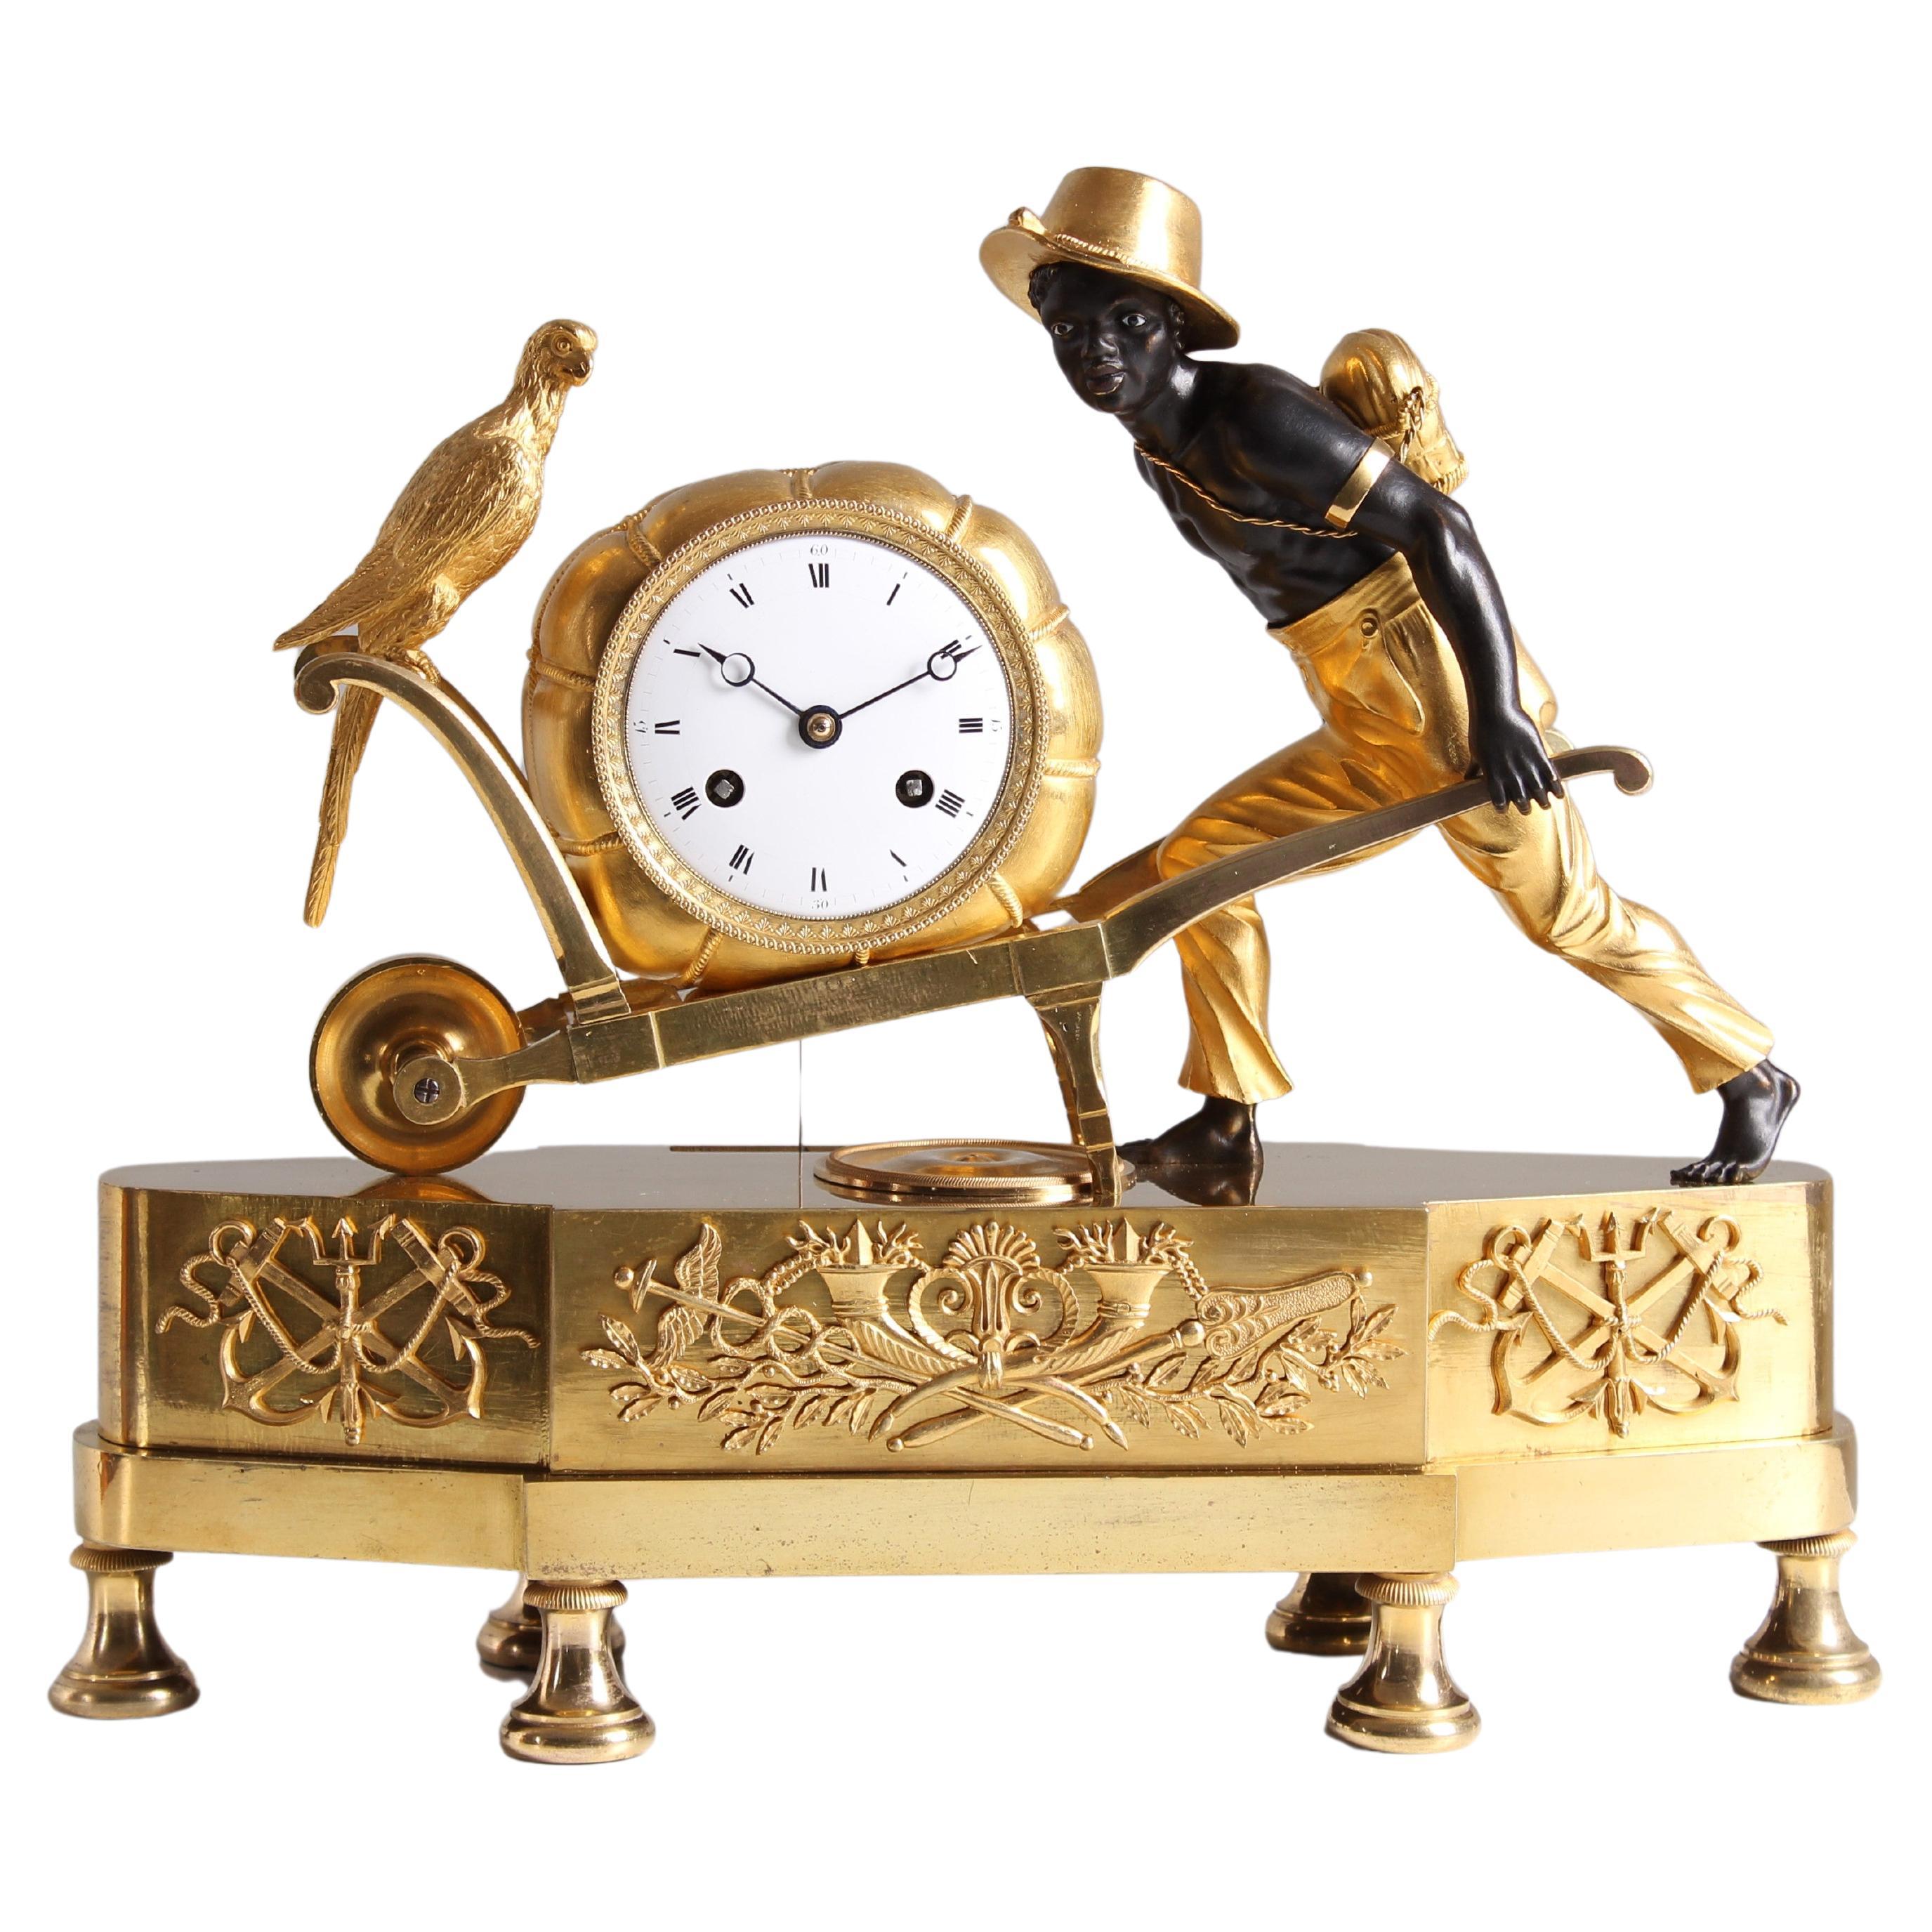 Horloge de cheminée du début du XIXe siècle, bronze doré, Paris vers 1810